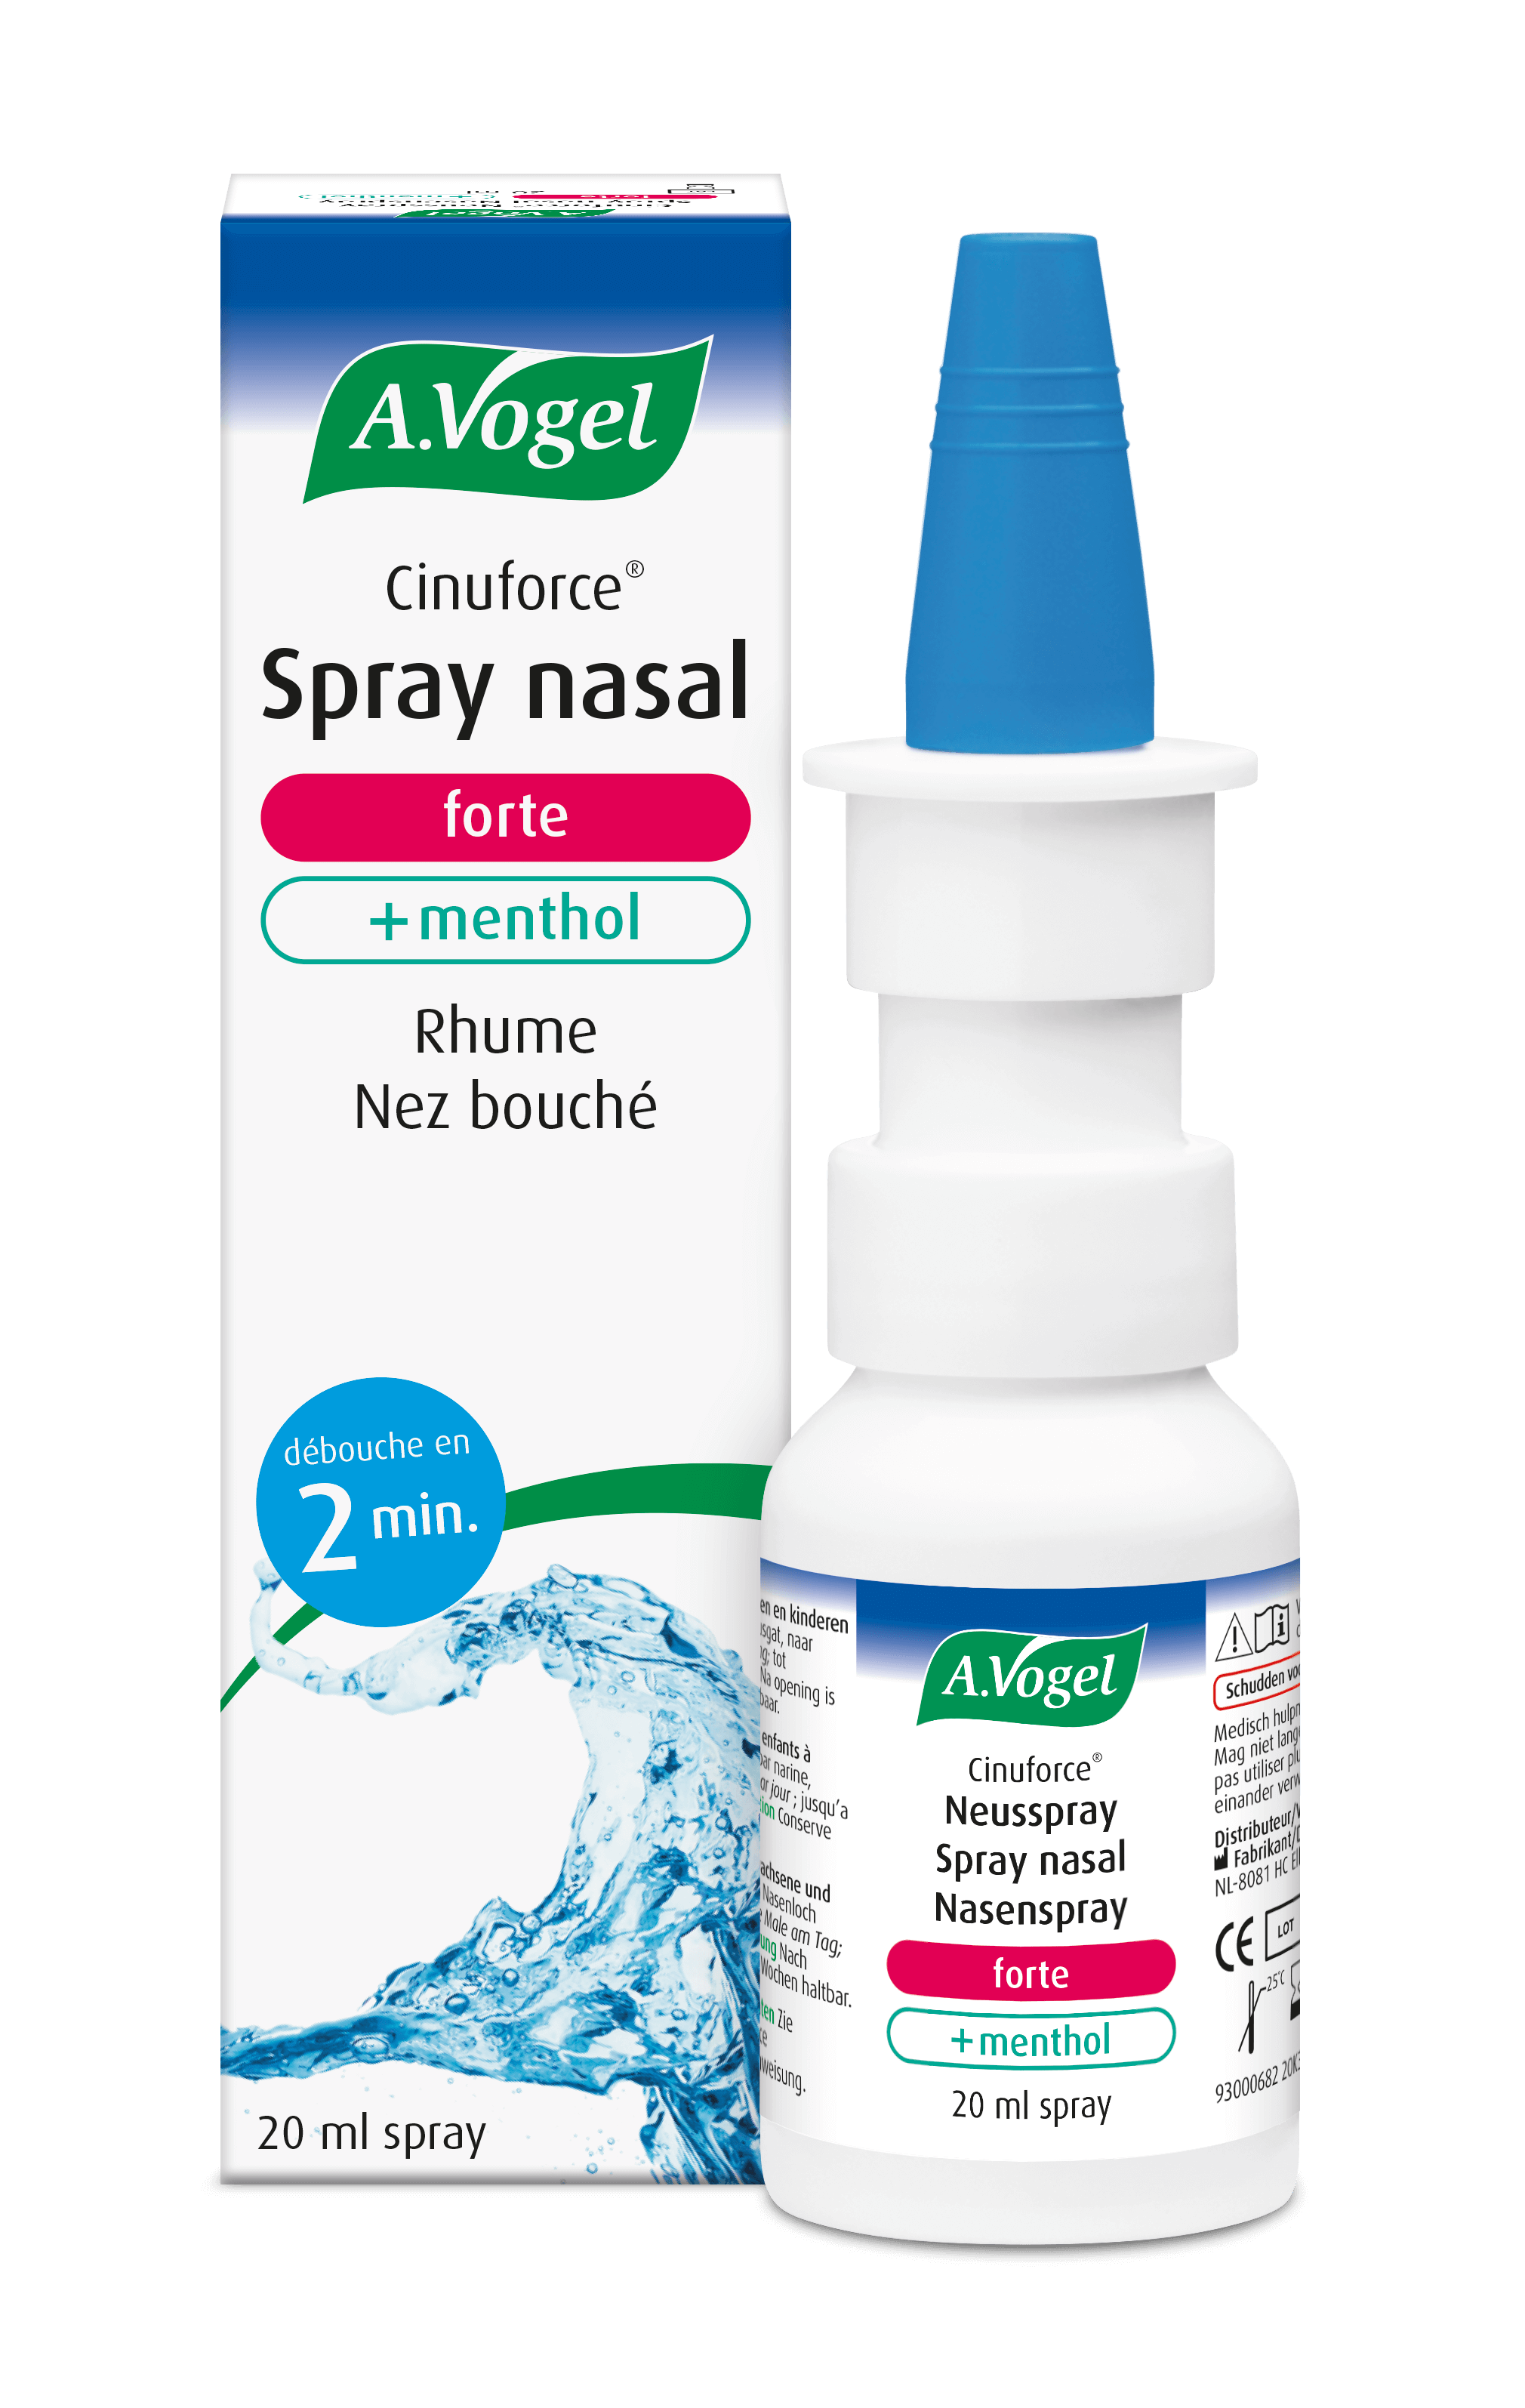 Les avantages d'un spray nasal naturel, sans effets secondaires